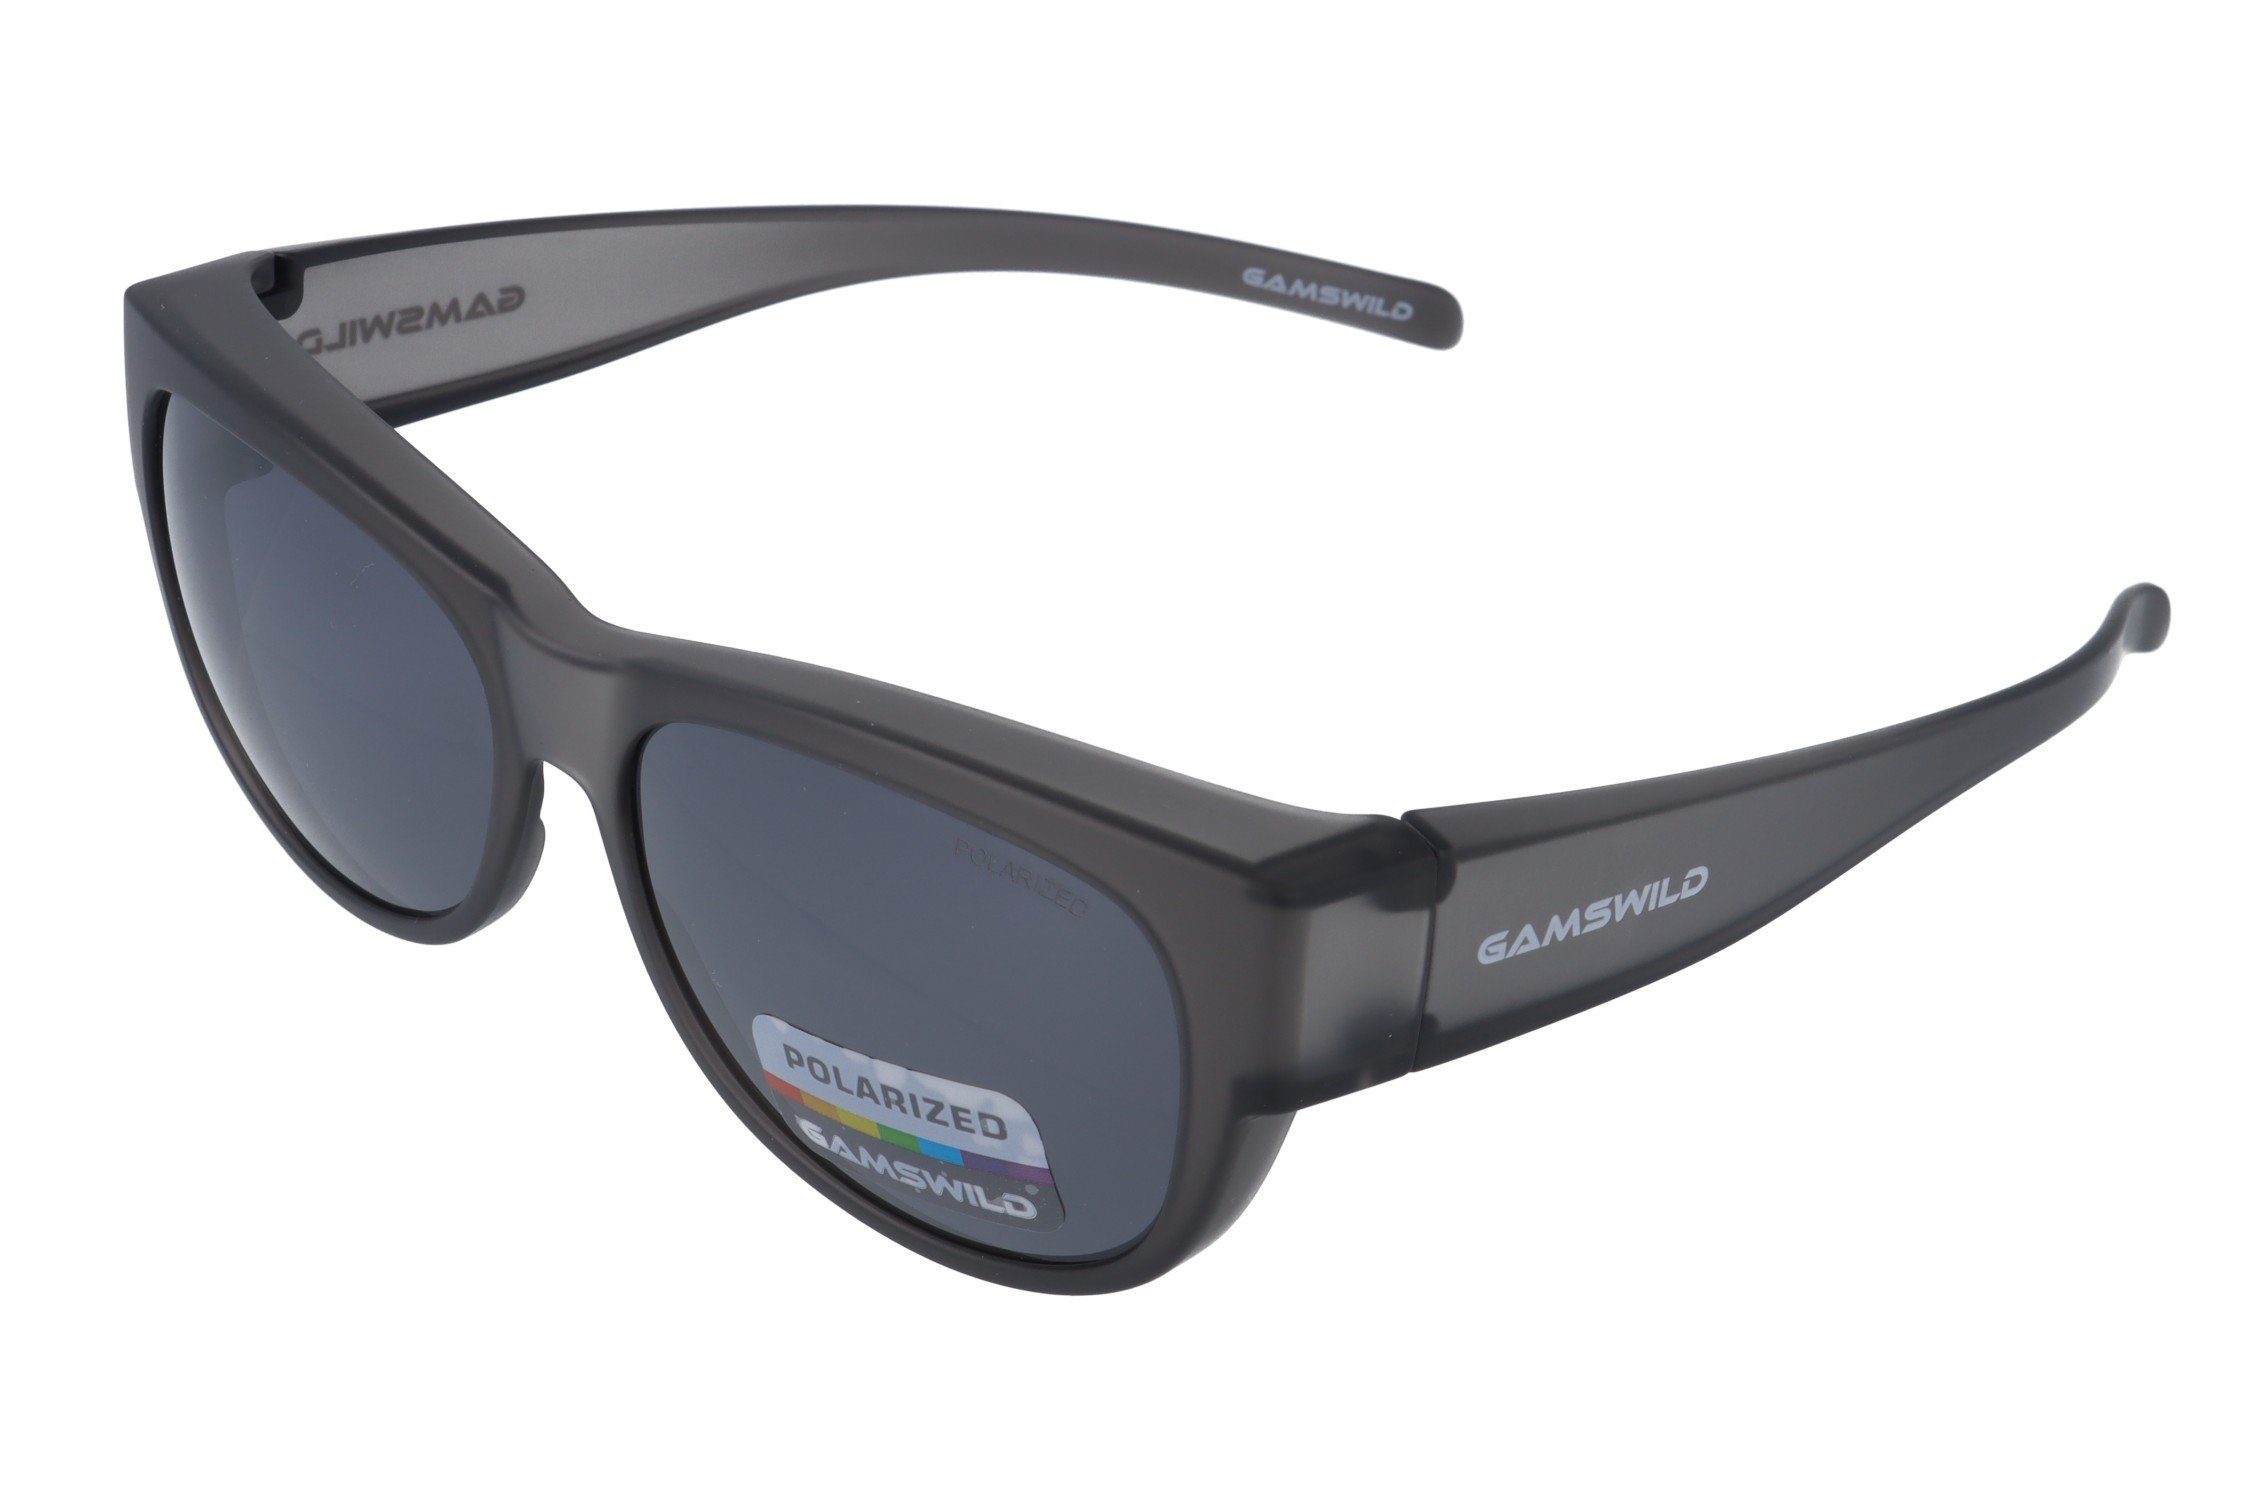 Herren, schwarz, Damen braun, Überbrille WS4032 polarisiert, Sonnenbrille Passform universelle grau Gamswild grau-transparent Sportbrille